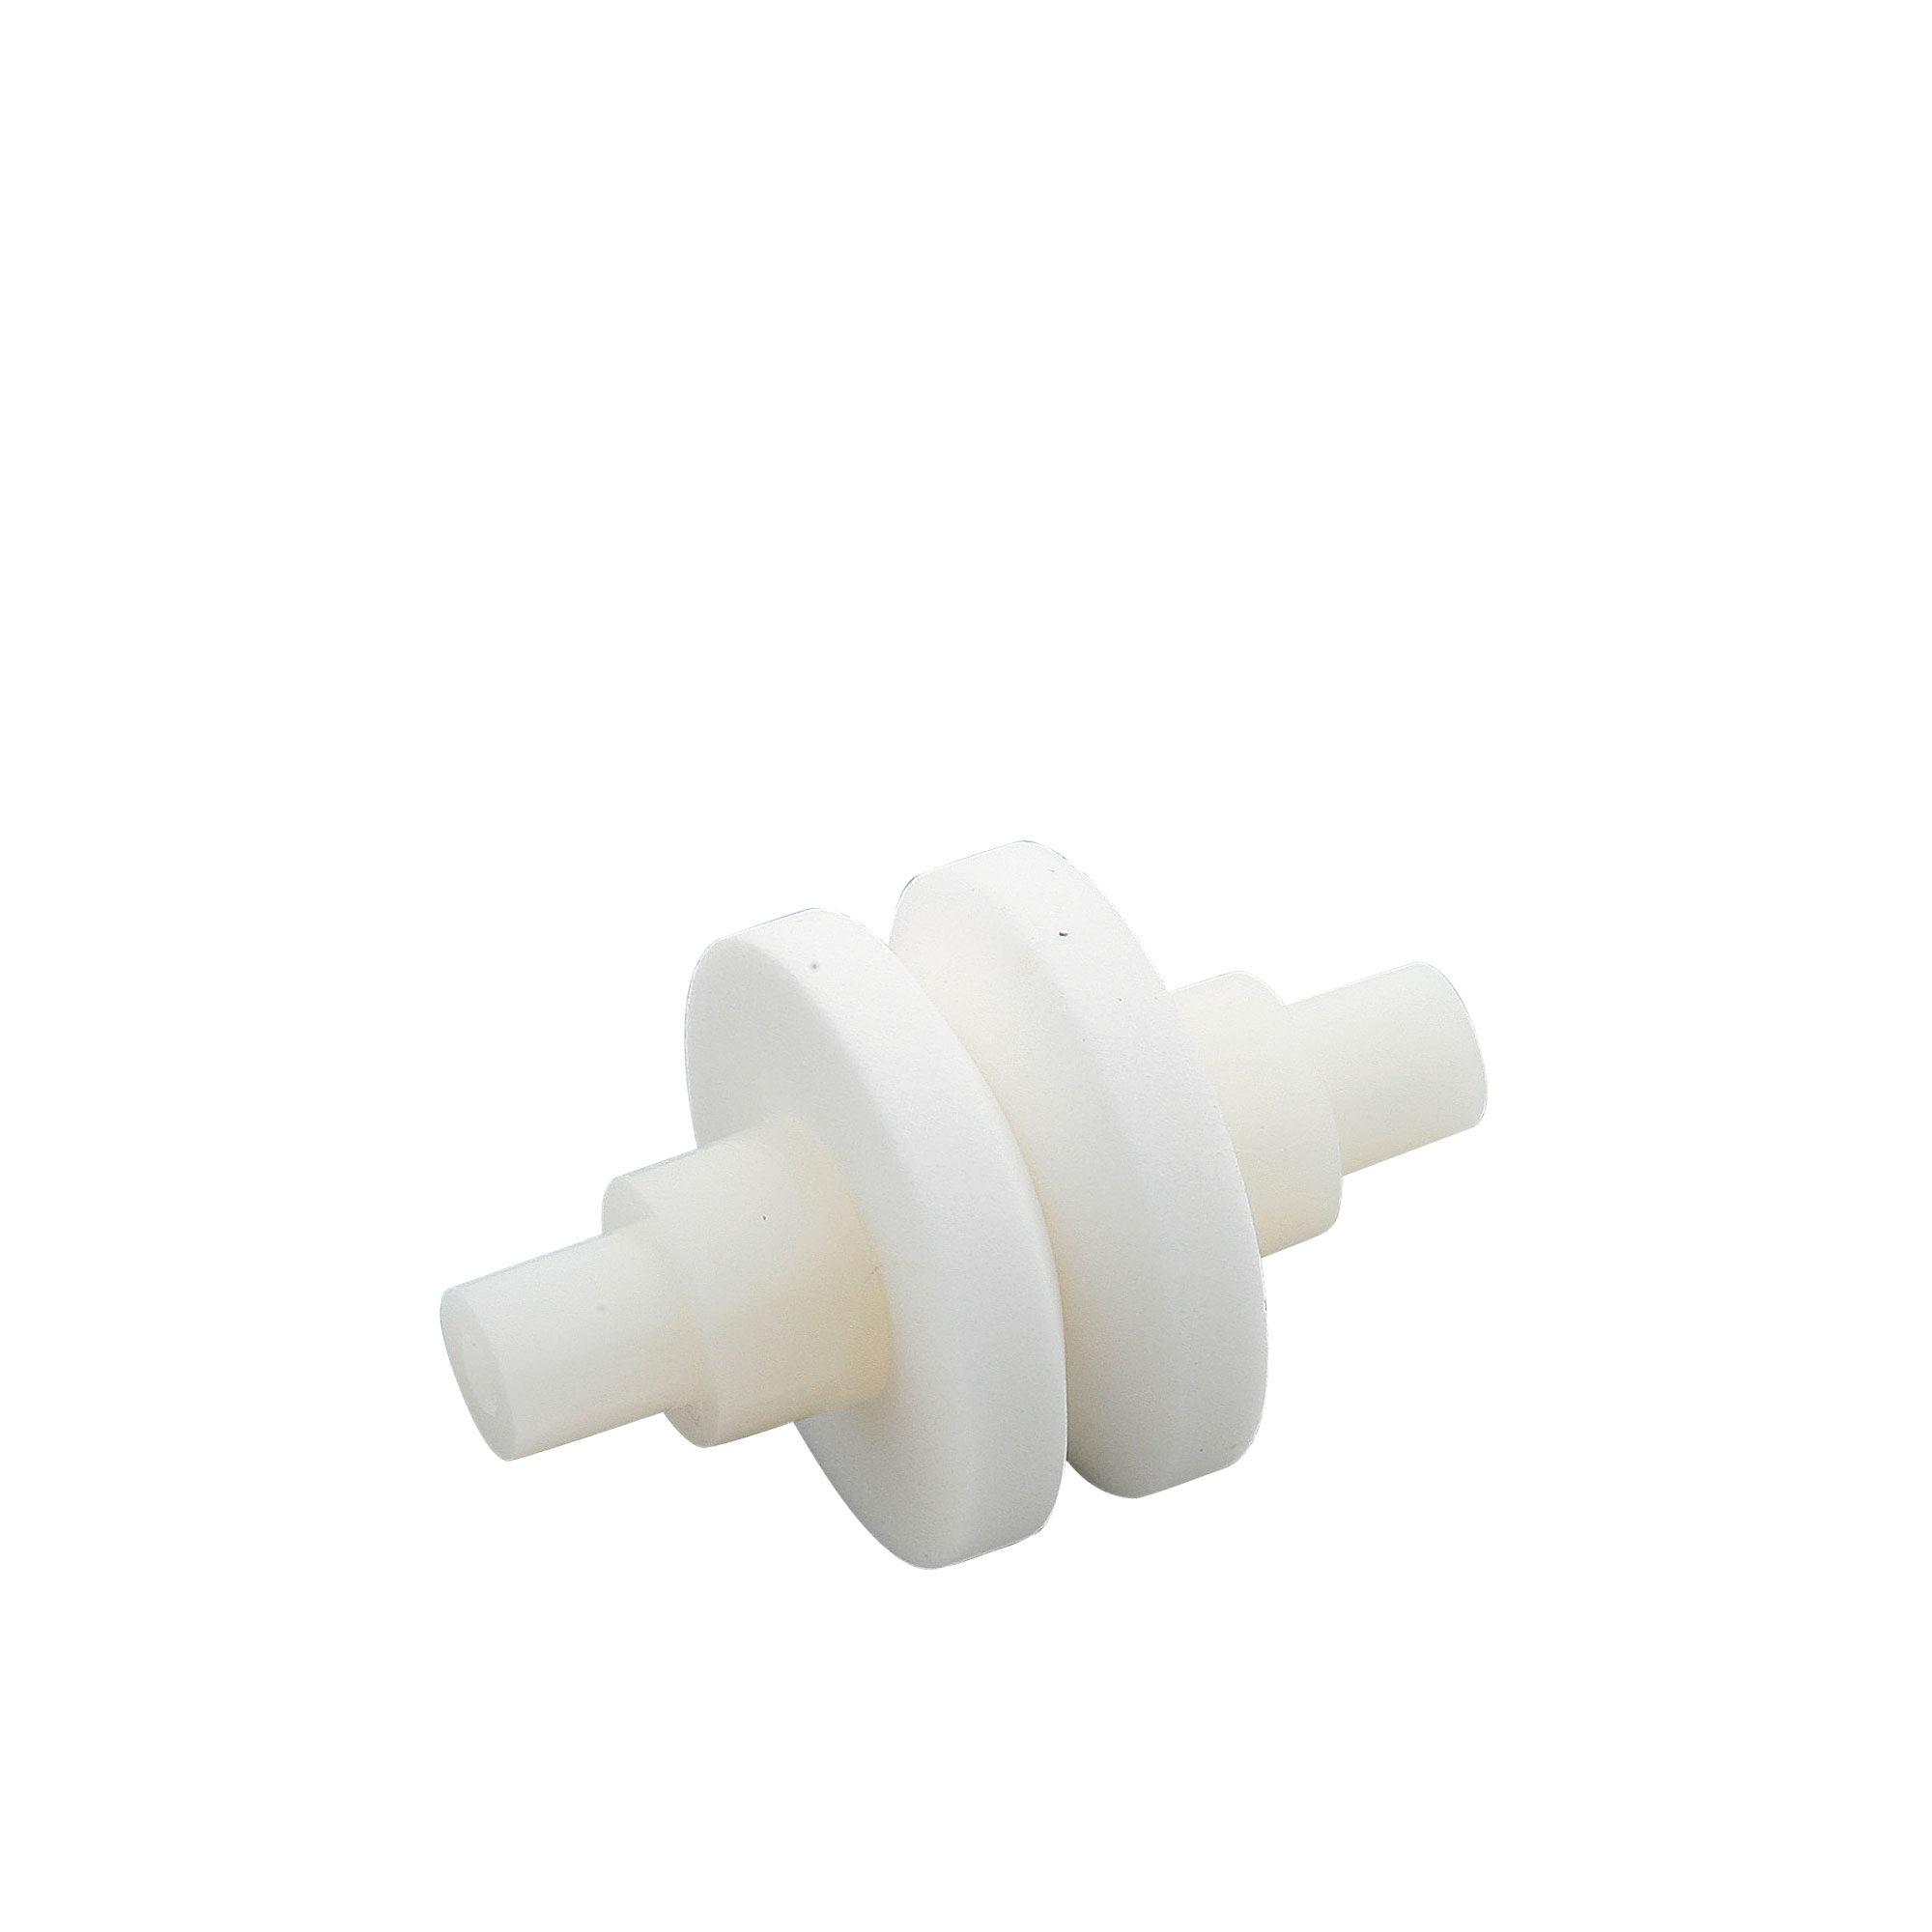 Global MinoSharp Water Sharpener Ceramic Replacement Wheel White Image 1